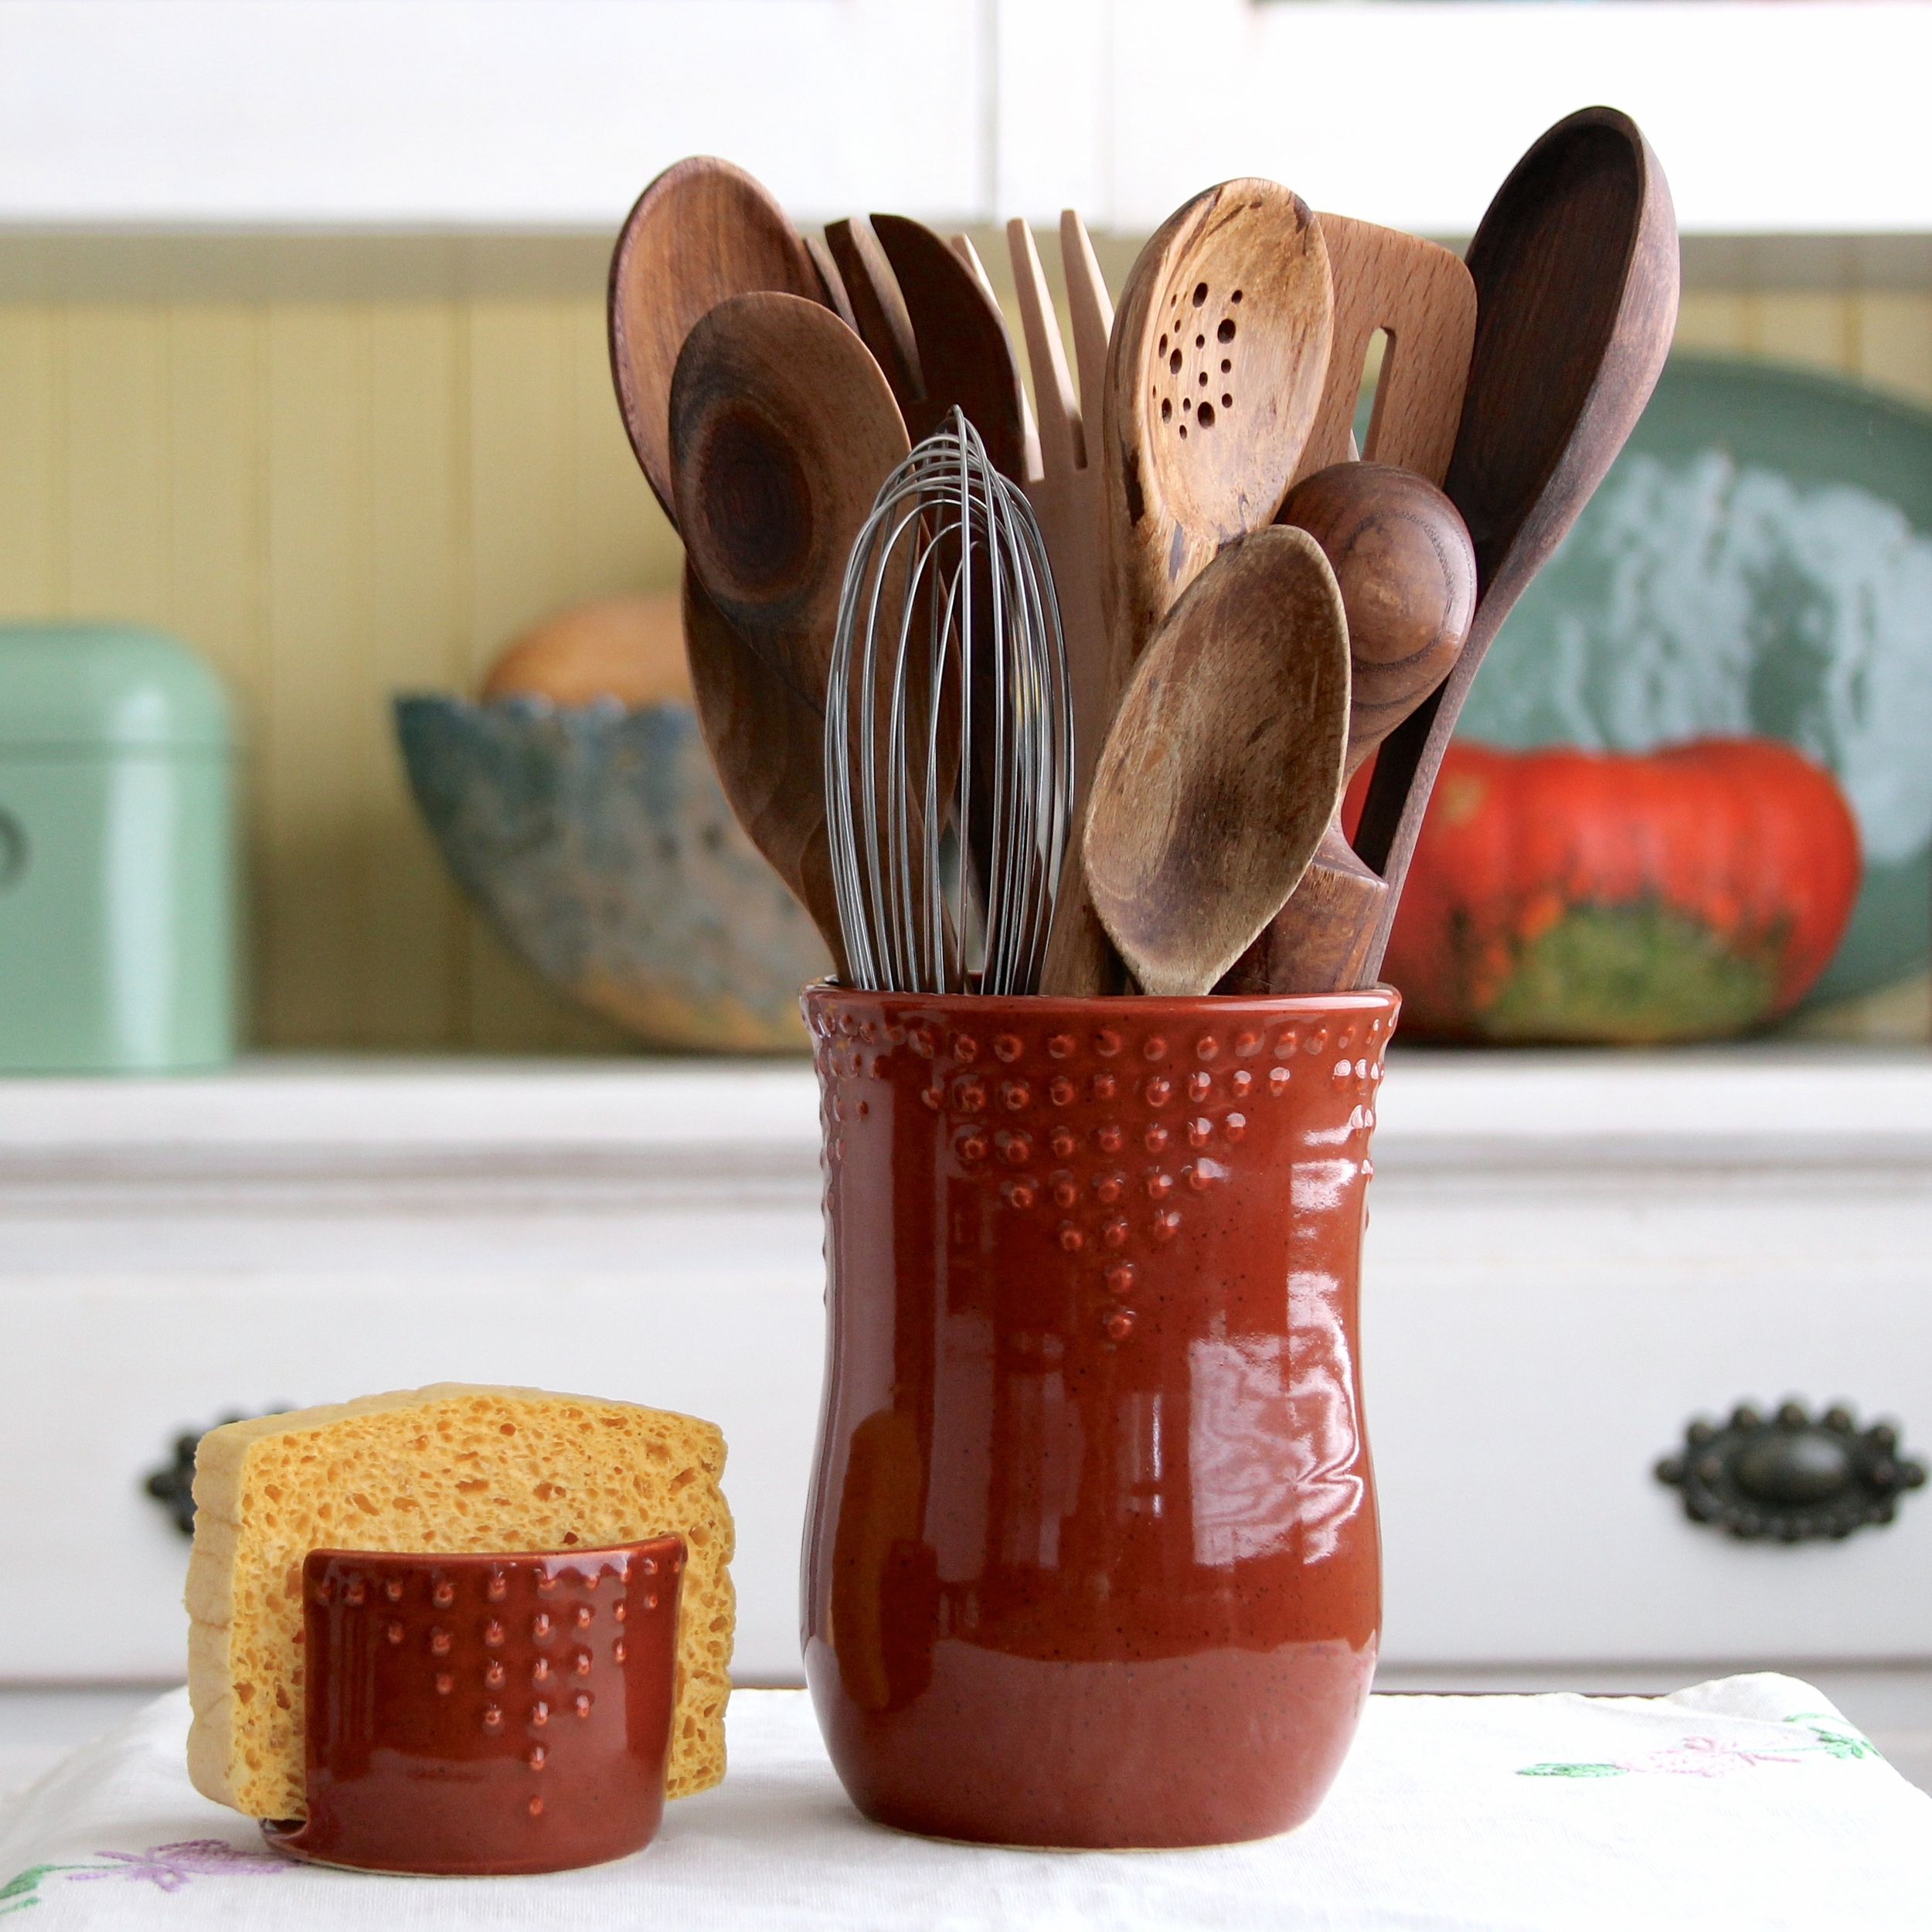 Handmade Ceramic Vase Pottery Home Decor Flower Vase Kitchen Decor Utensil Holder Gifts for Home